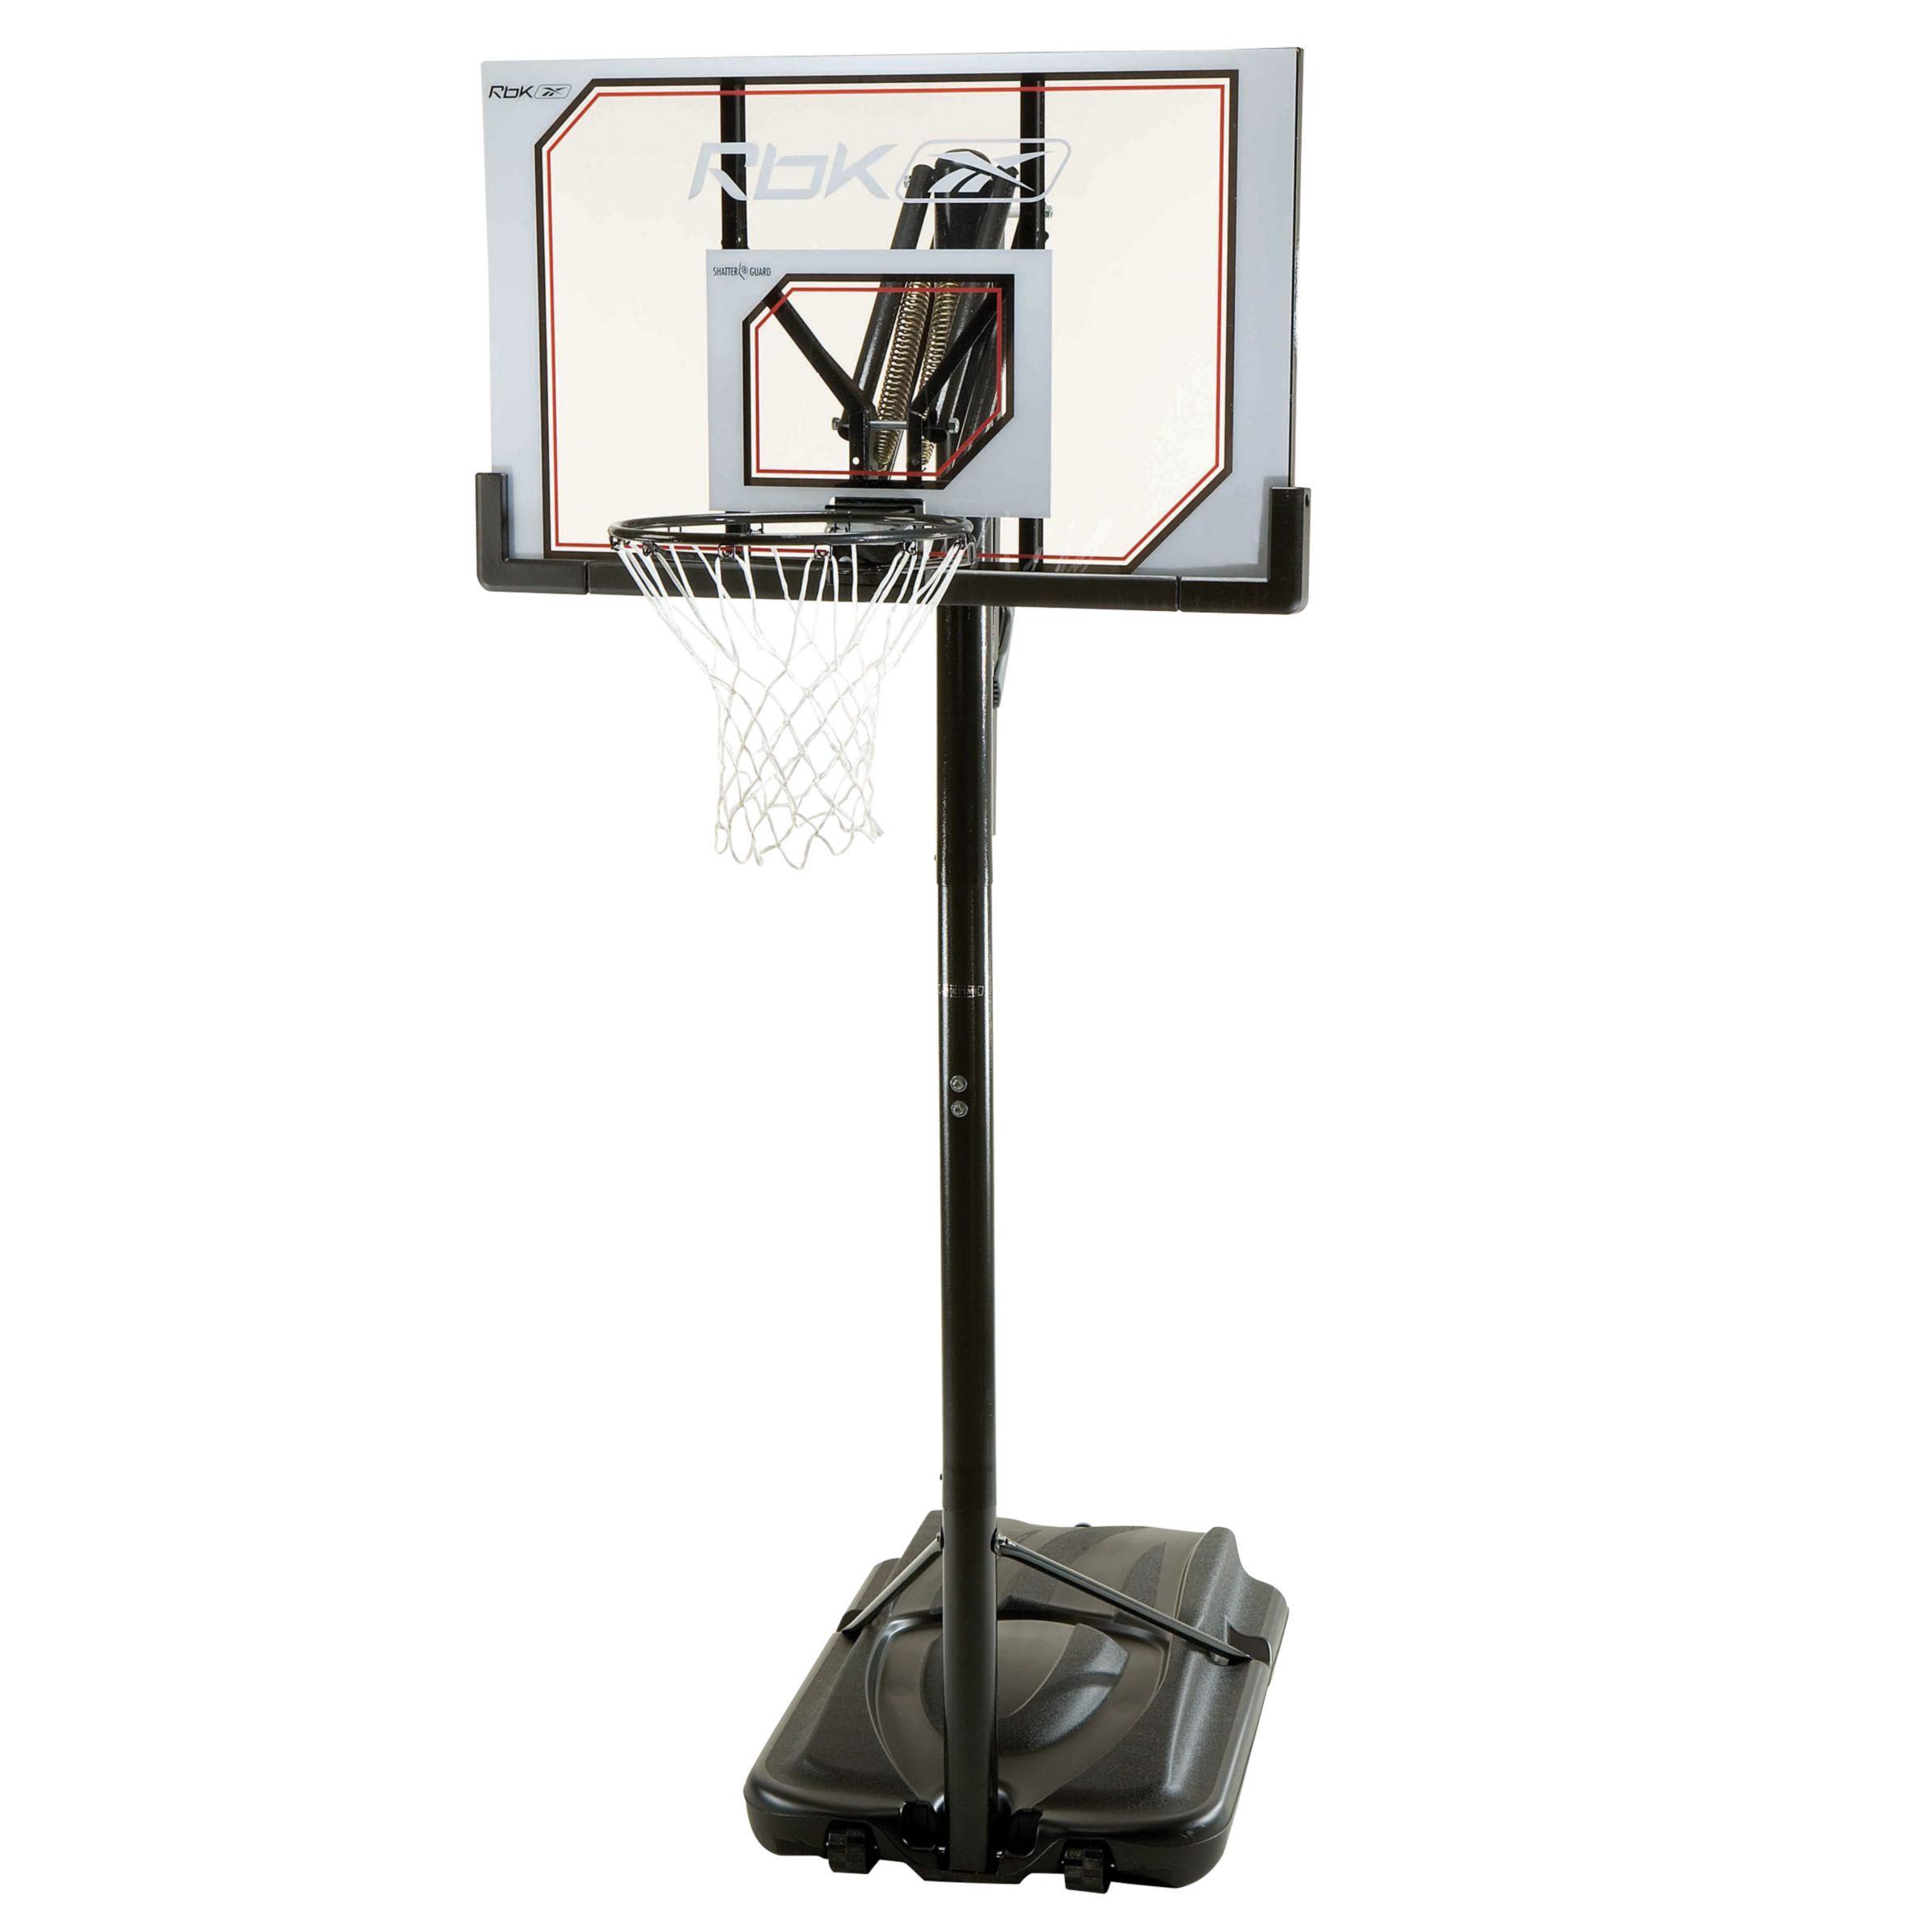 Rebook Acrylic Fusion Portable Basketball System